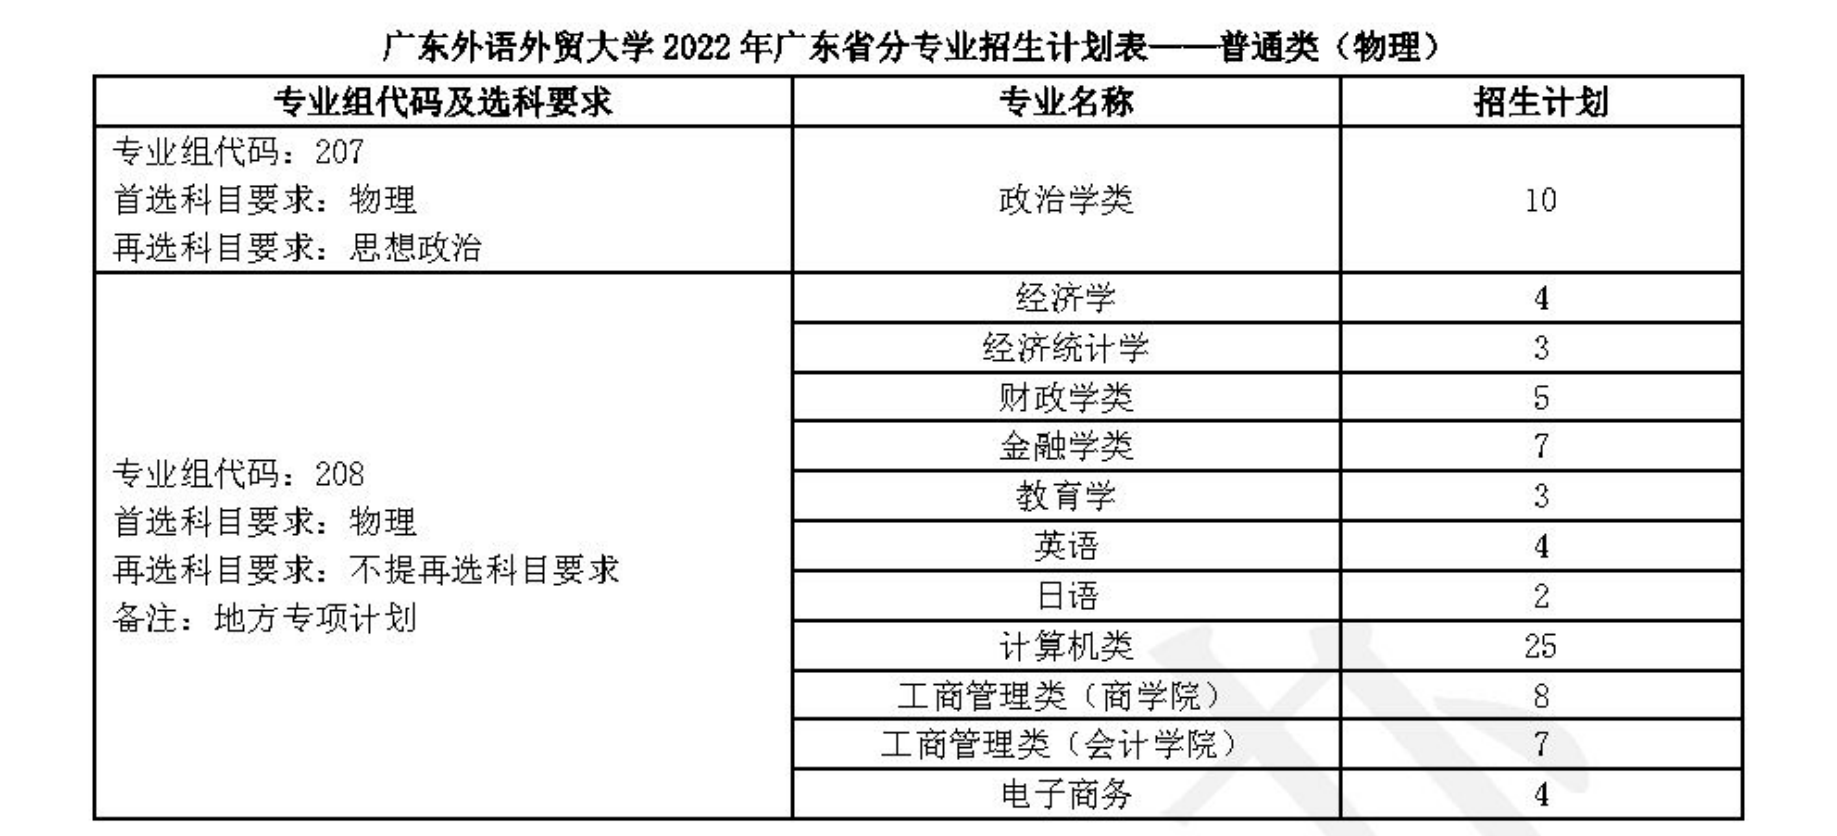 广东外语外贸大学2022年分省（区、市）分专业招生计划